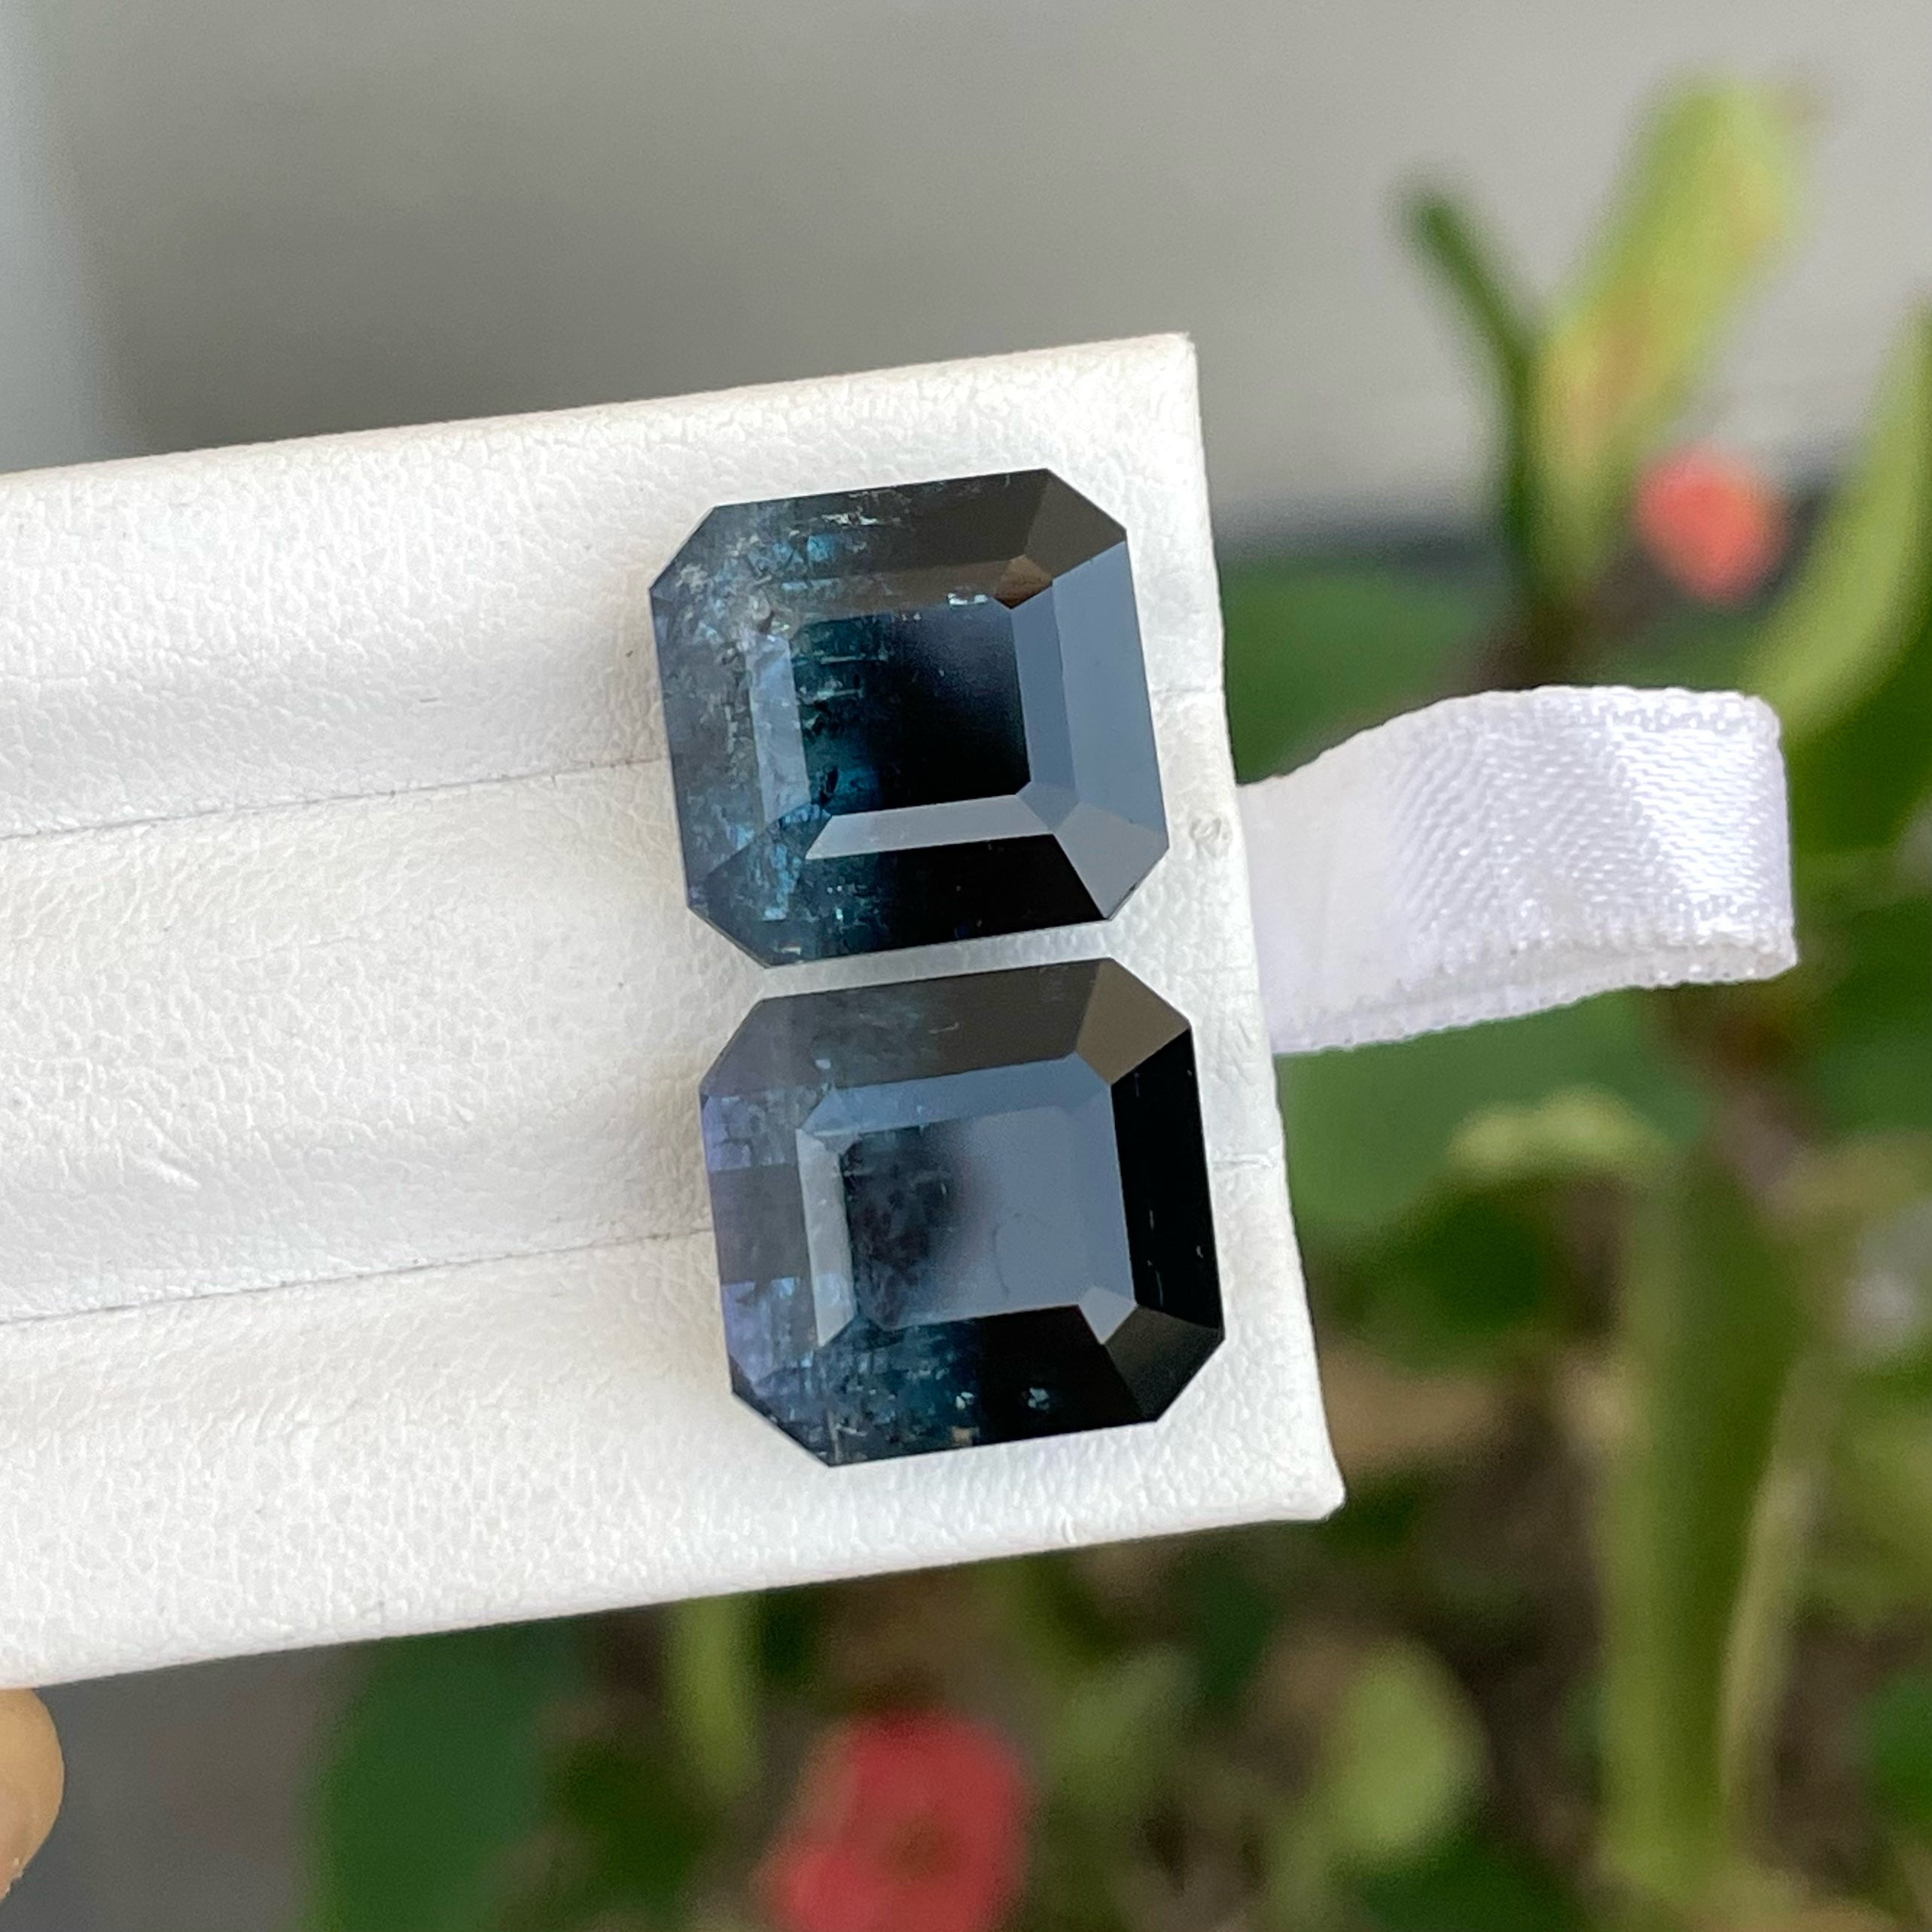 Natural Unusual Bi-color Tourmaline Gemstone Pair